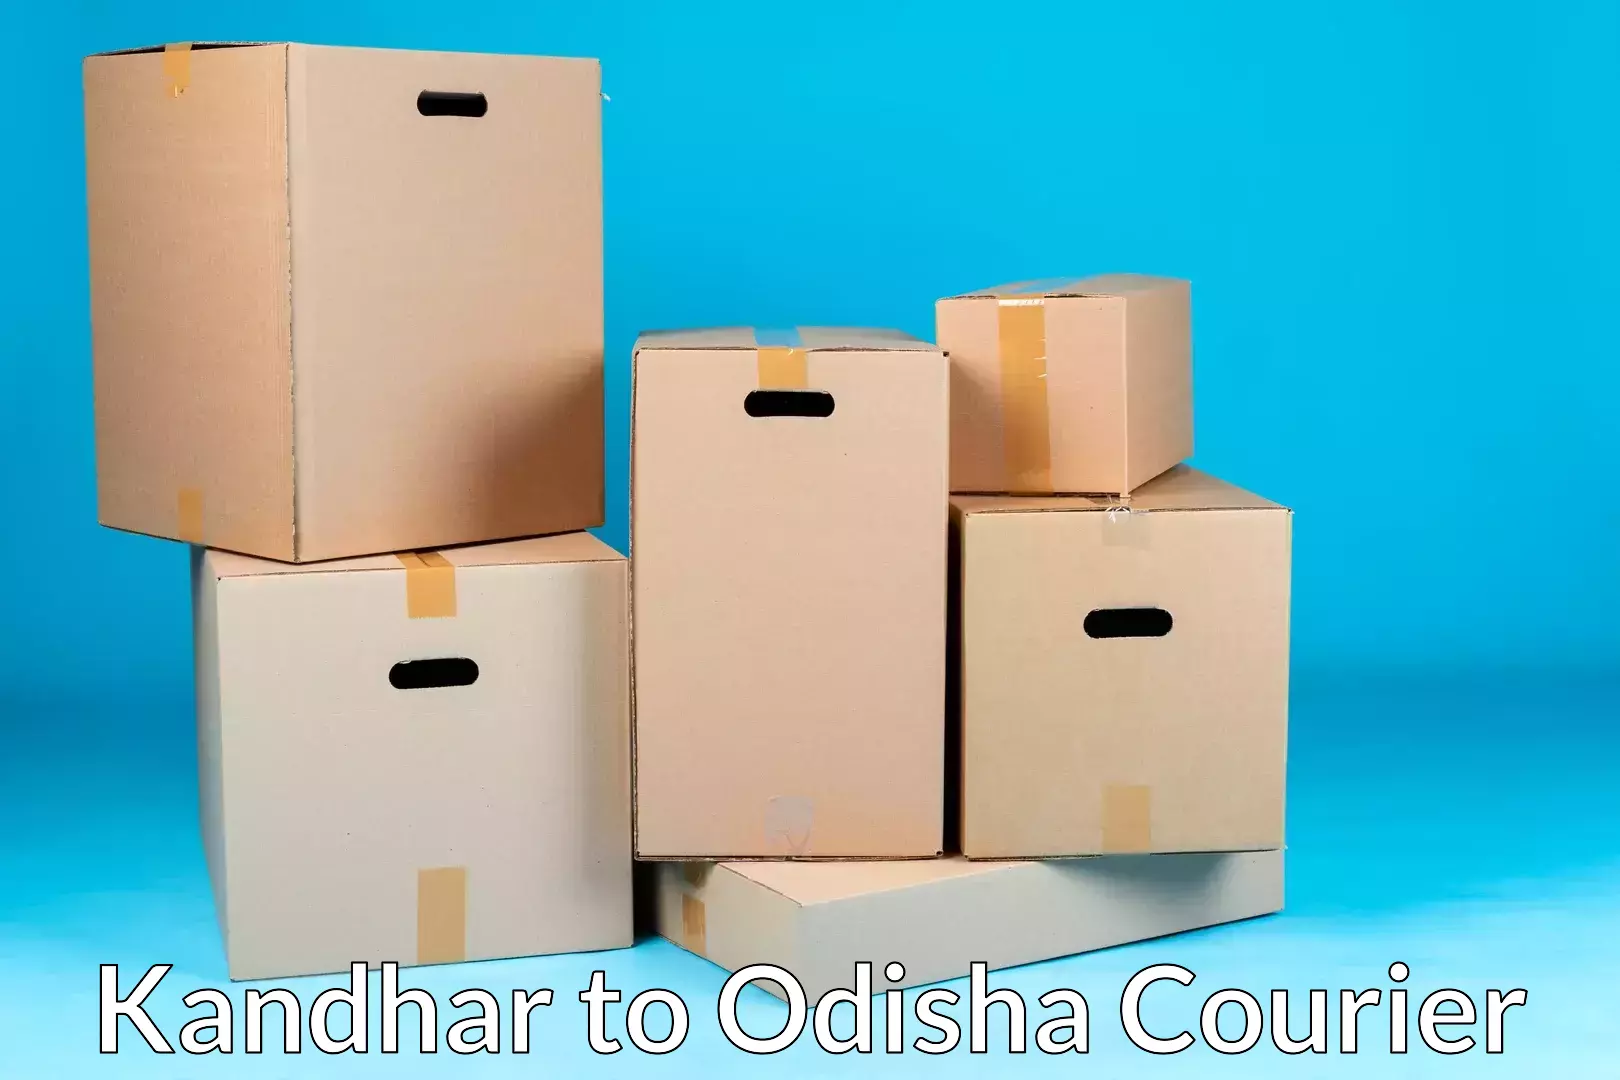 Professional moving assistance Kandhar to Ukhunda